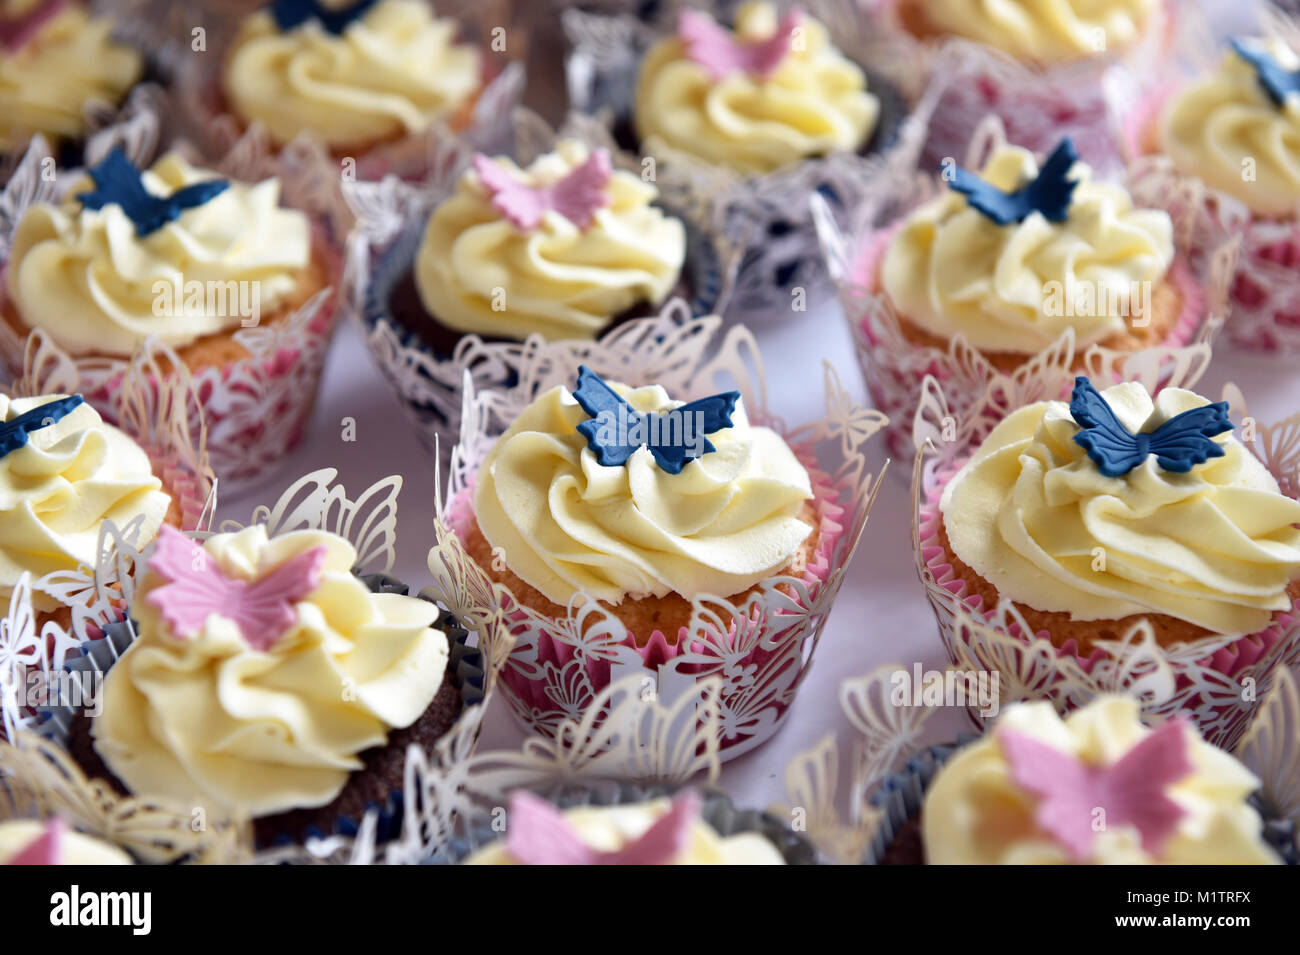 Cupcakes mariposas con blanco escarcha en una recepción de boda Foto de stock